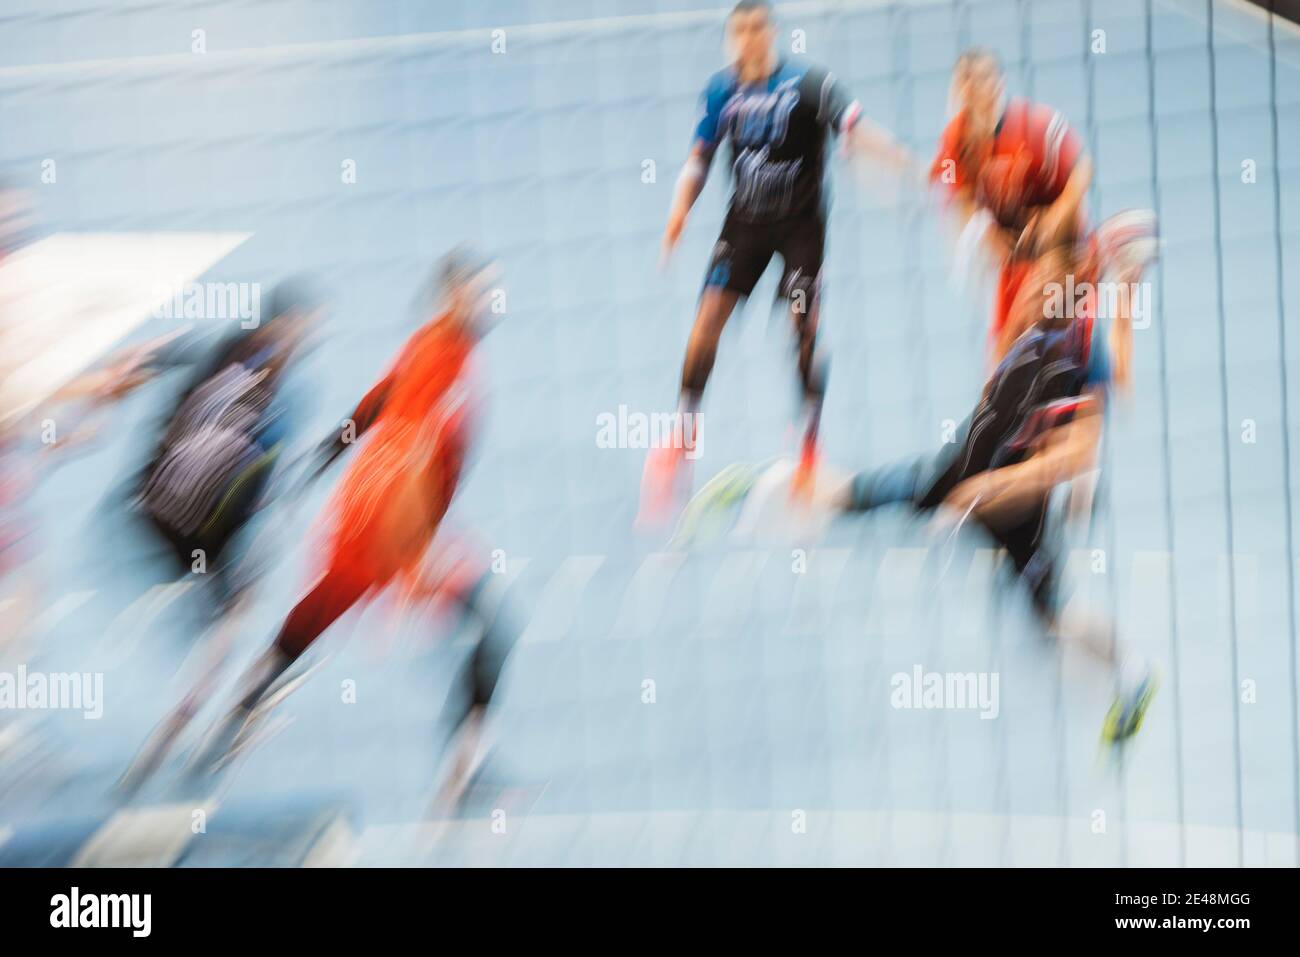 Handballspieler während des Spiels - absichtlich verschwommen durch lange Belichtung. Stockfoto